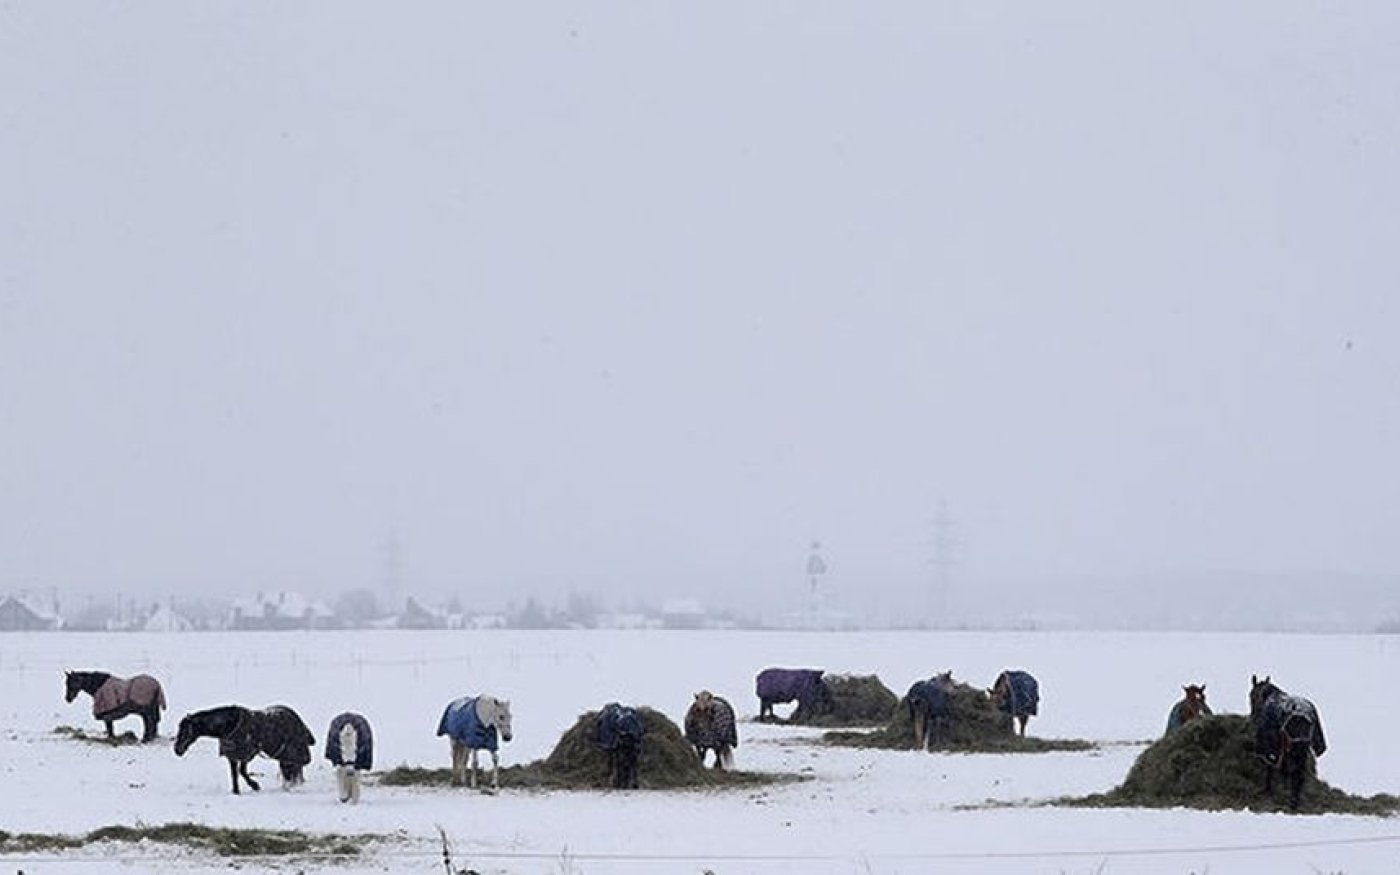 Φωτό ημέρας: Άλογα σε χιονισμένο λιβάδι EPA/MAXIM SHIPENKOV - Κυρίως Φωτογραφία - Gallery - Video